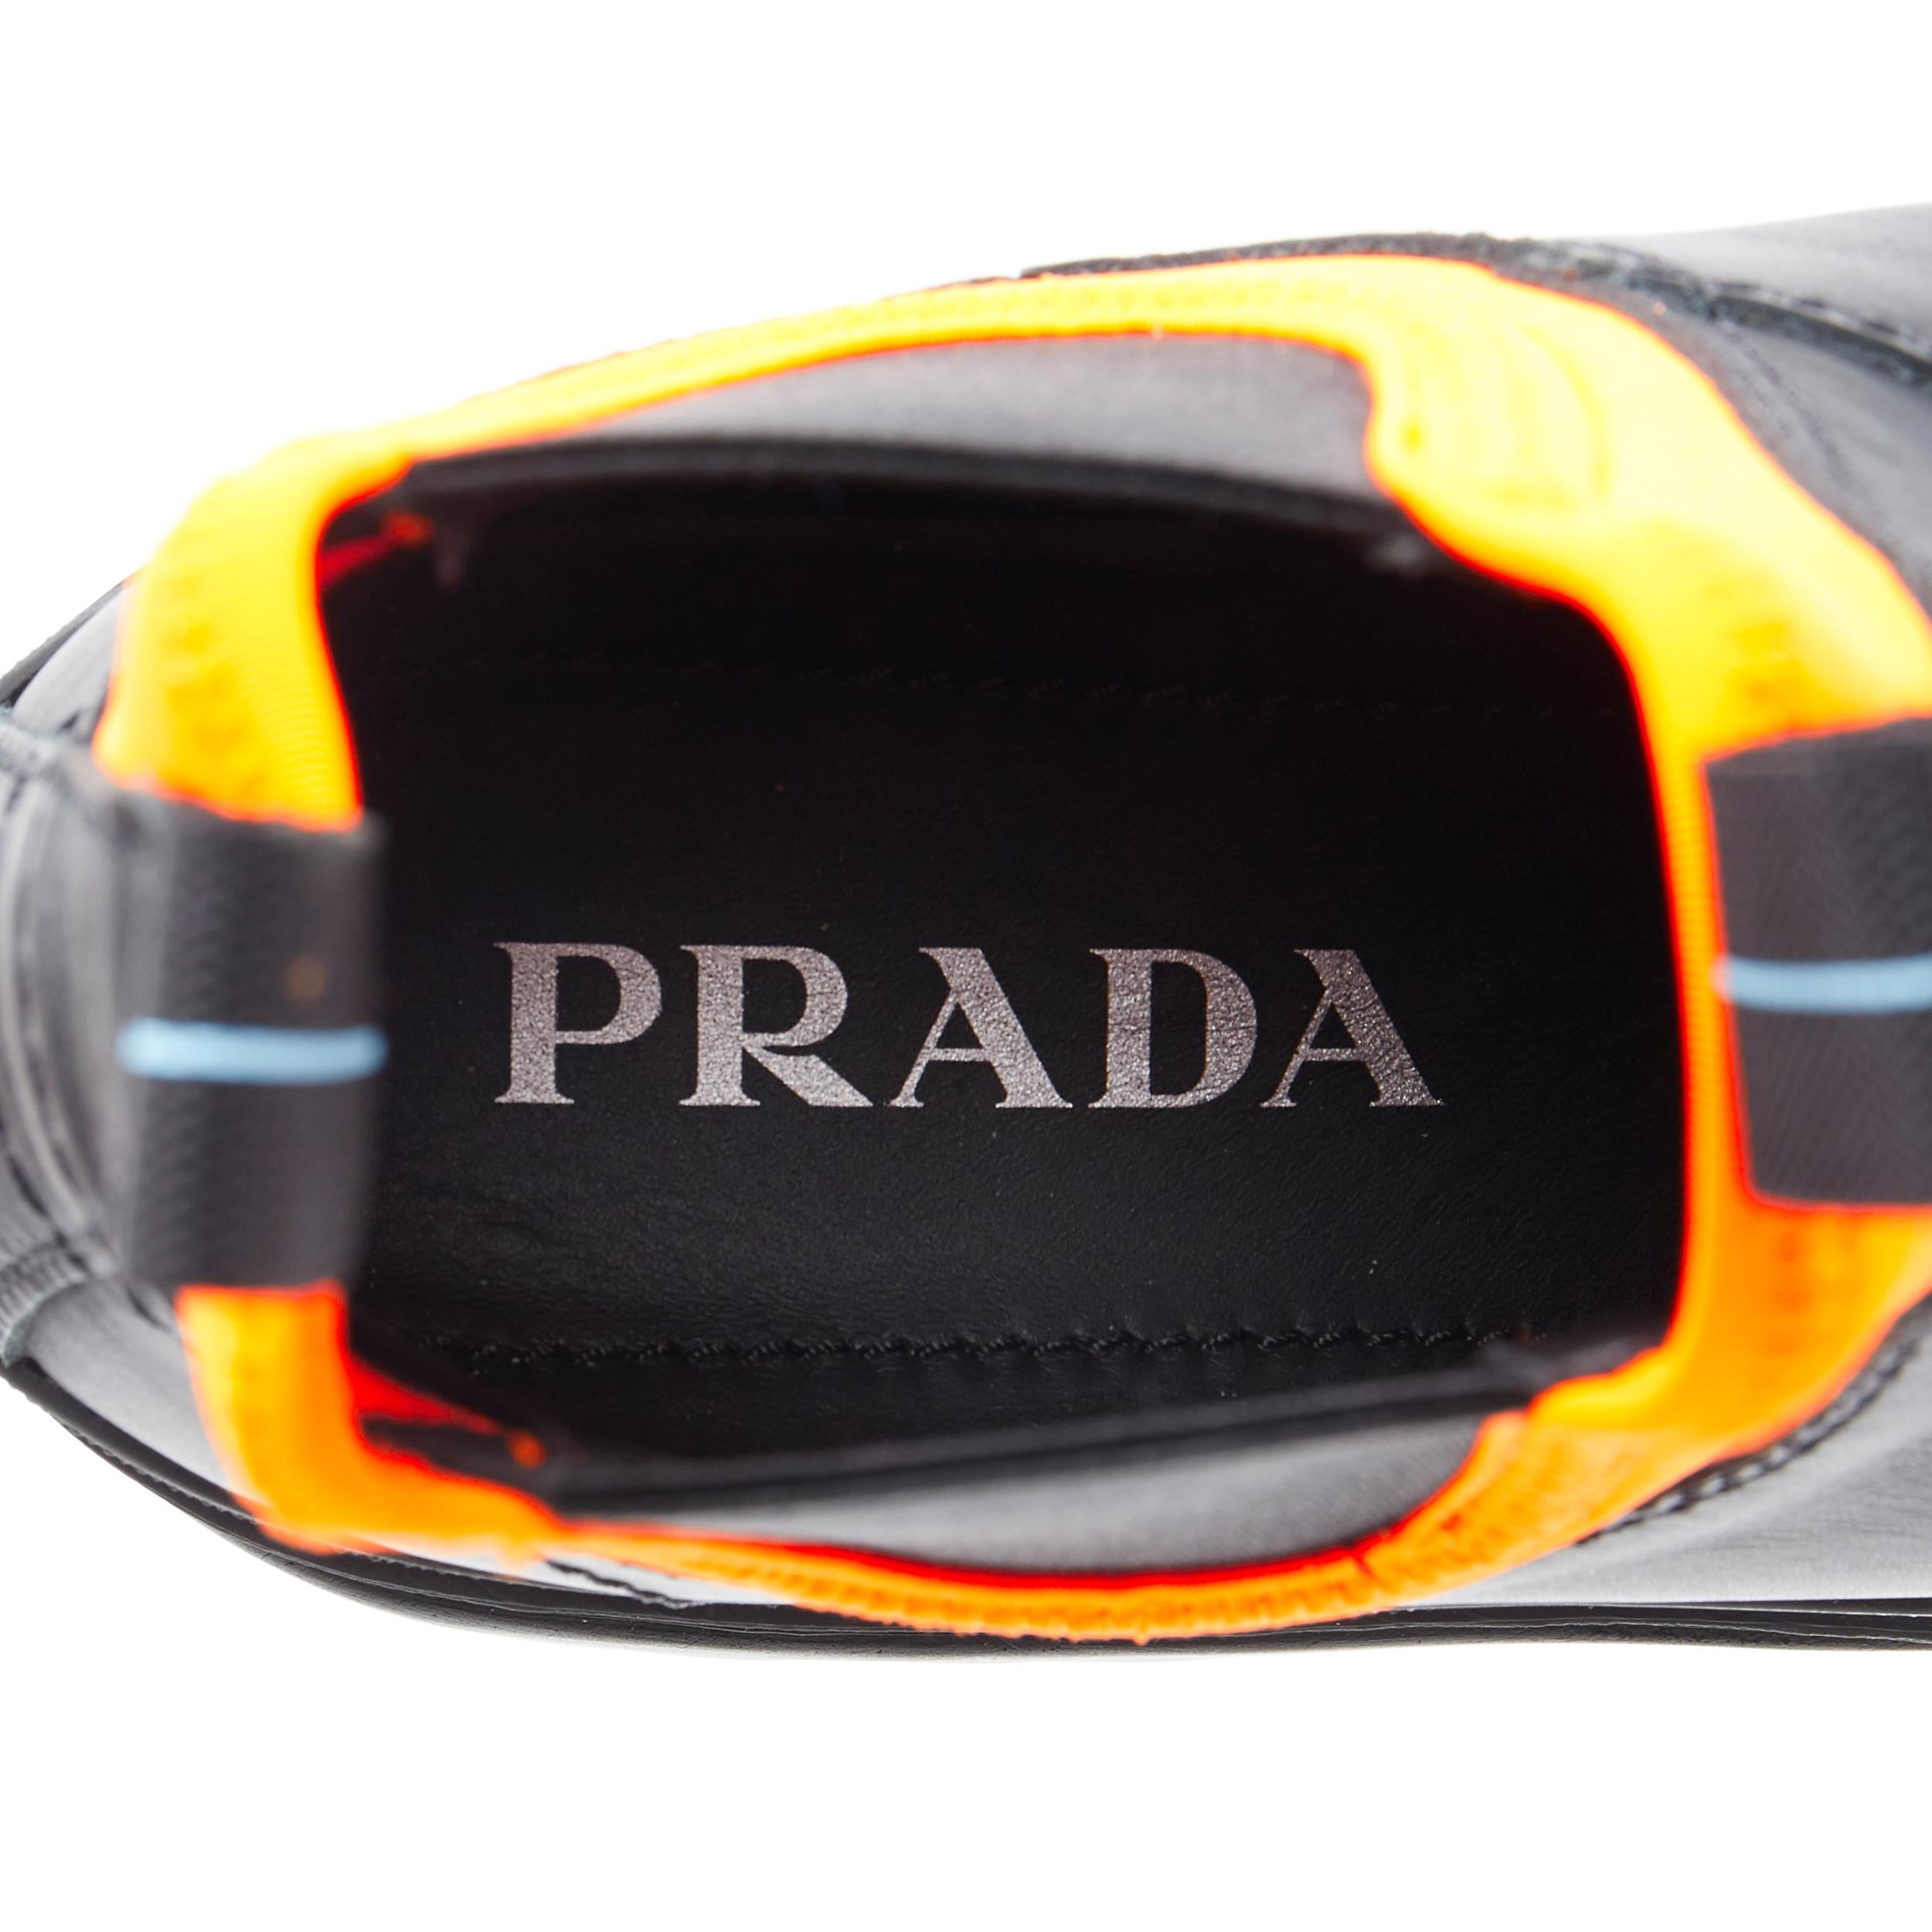 new PRADA 2018 Runway neon orange neoprene black leather ankle rugged boot EU36 2